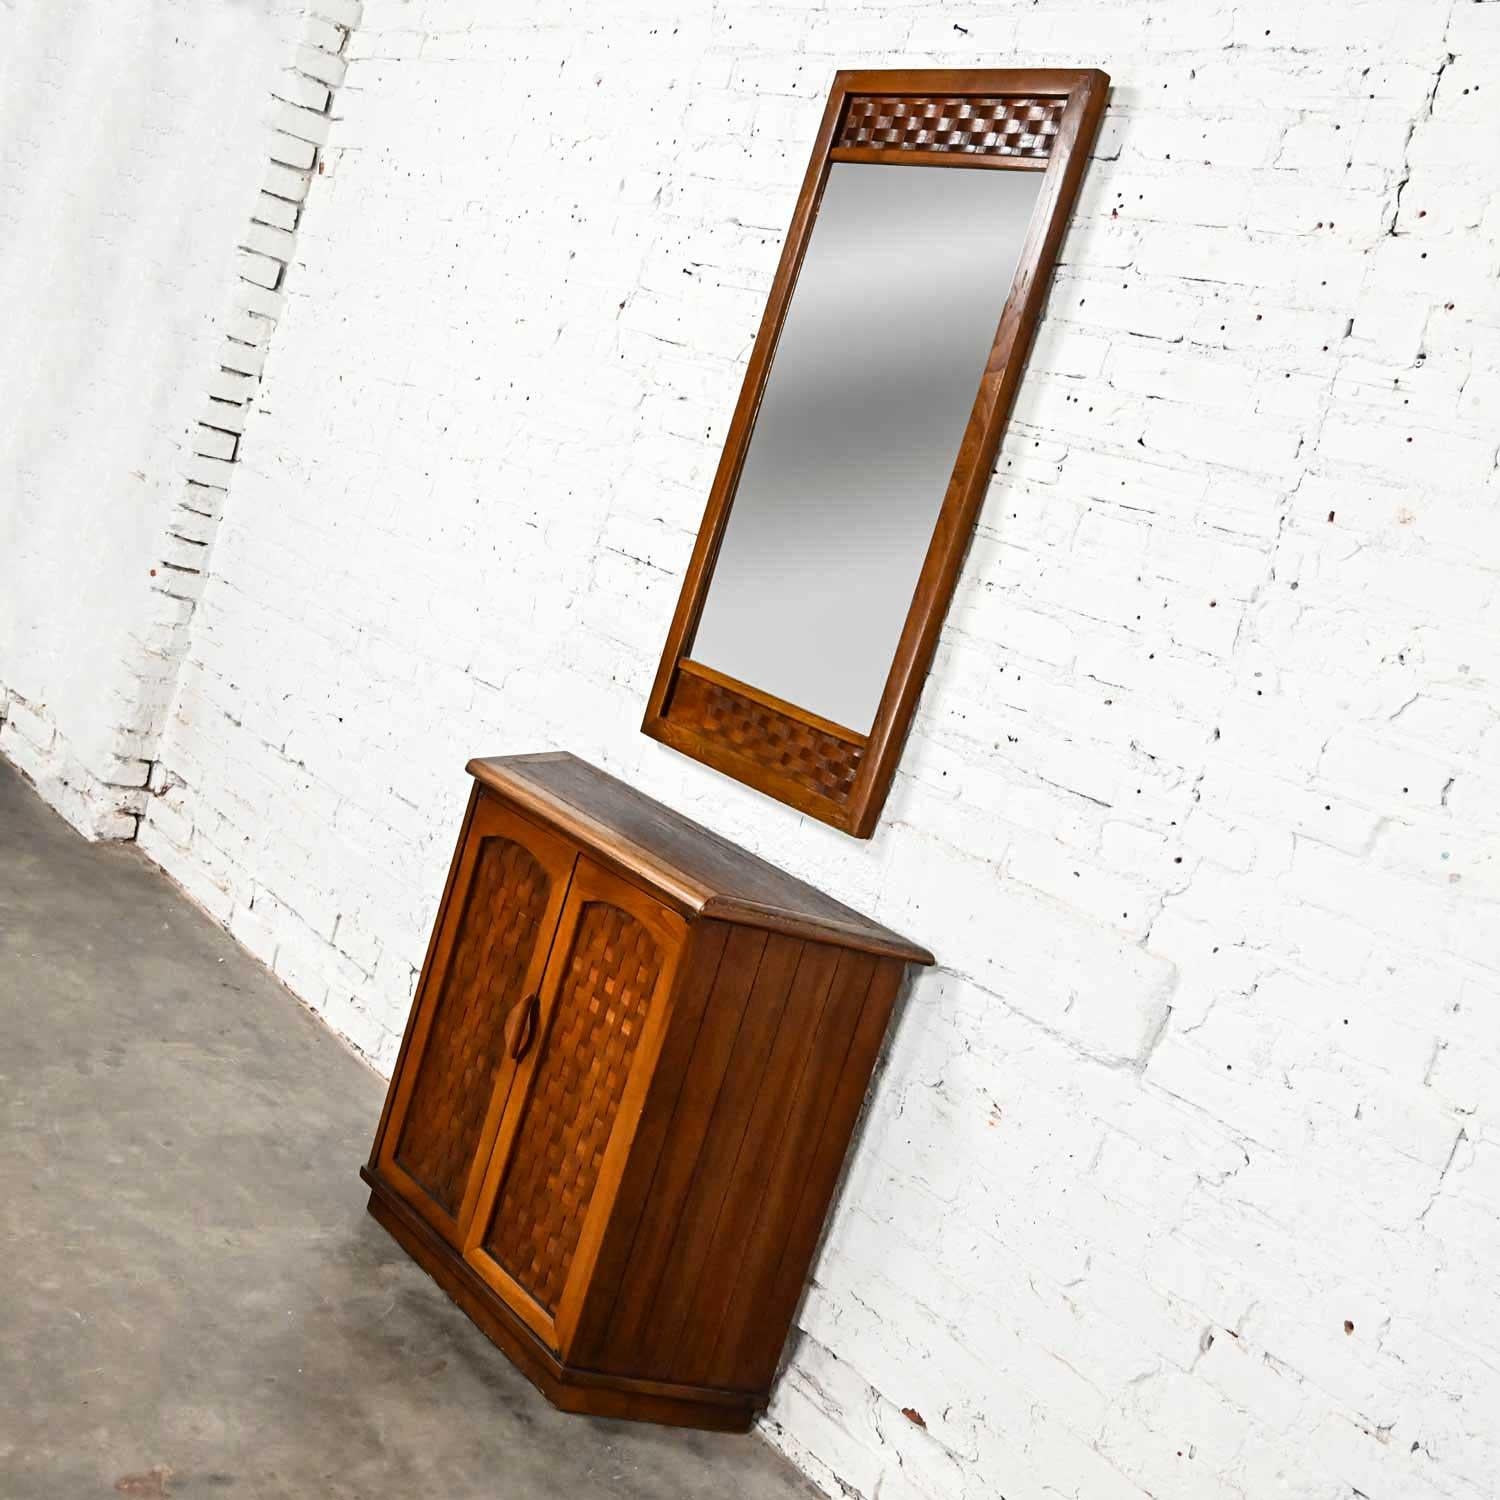 Magnifique ensemble de deux pièces composé d'une console d'entrée et d'un miroir assorti avec des détails de tissage en forme de panier, dans le style de Lane Furniture, issu de leur ligne Perception conçue par Warren C. Church. Ces pièces ne